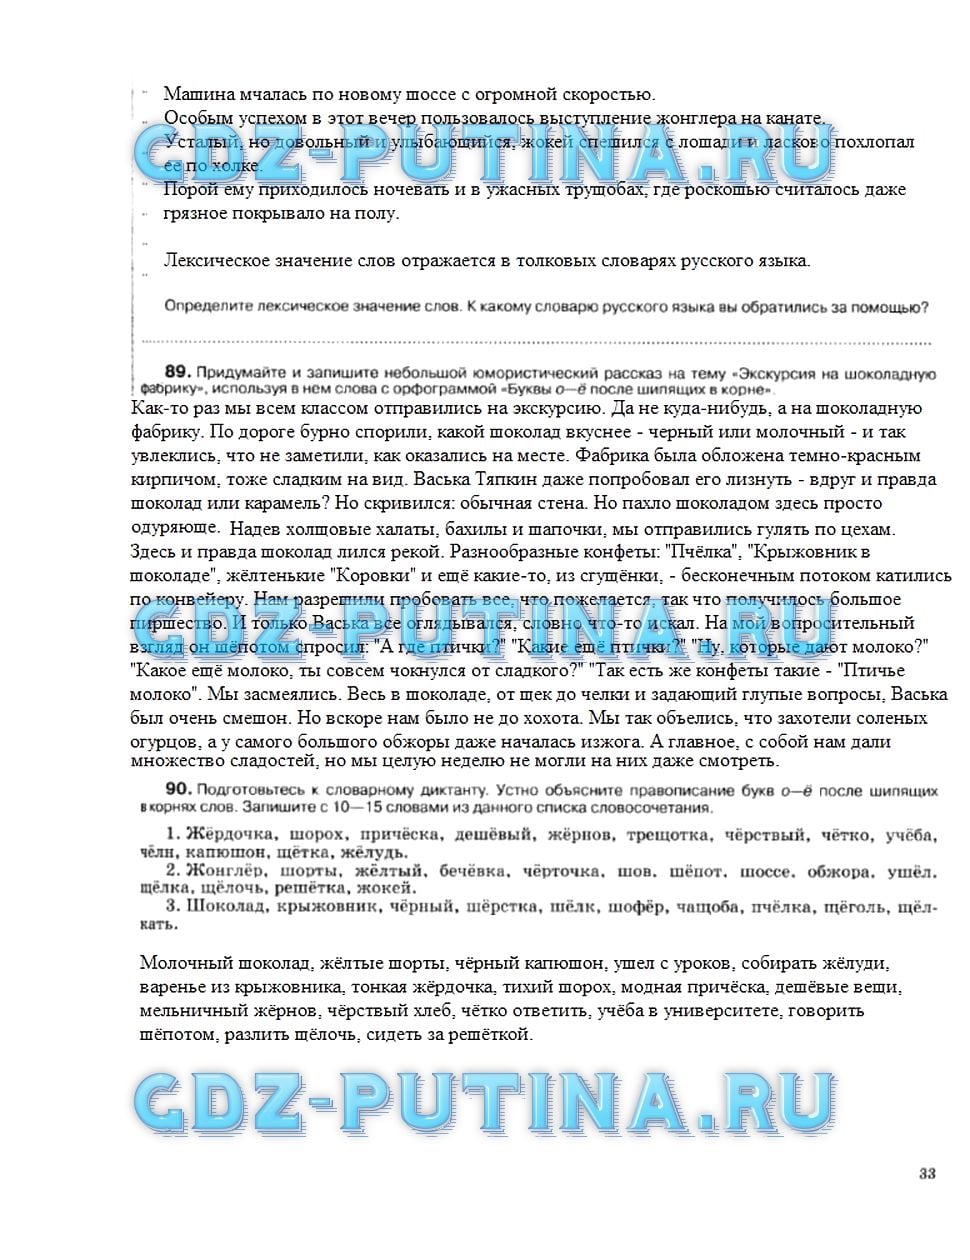 гдз 5 класс рабочая тетрадь страница 33 русский язык Ларионова